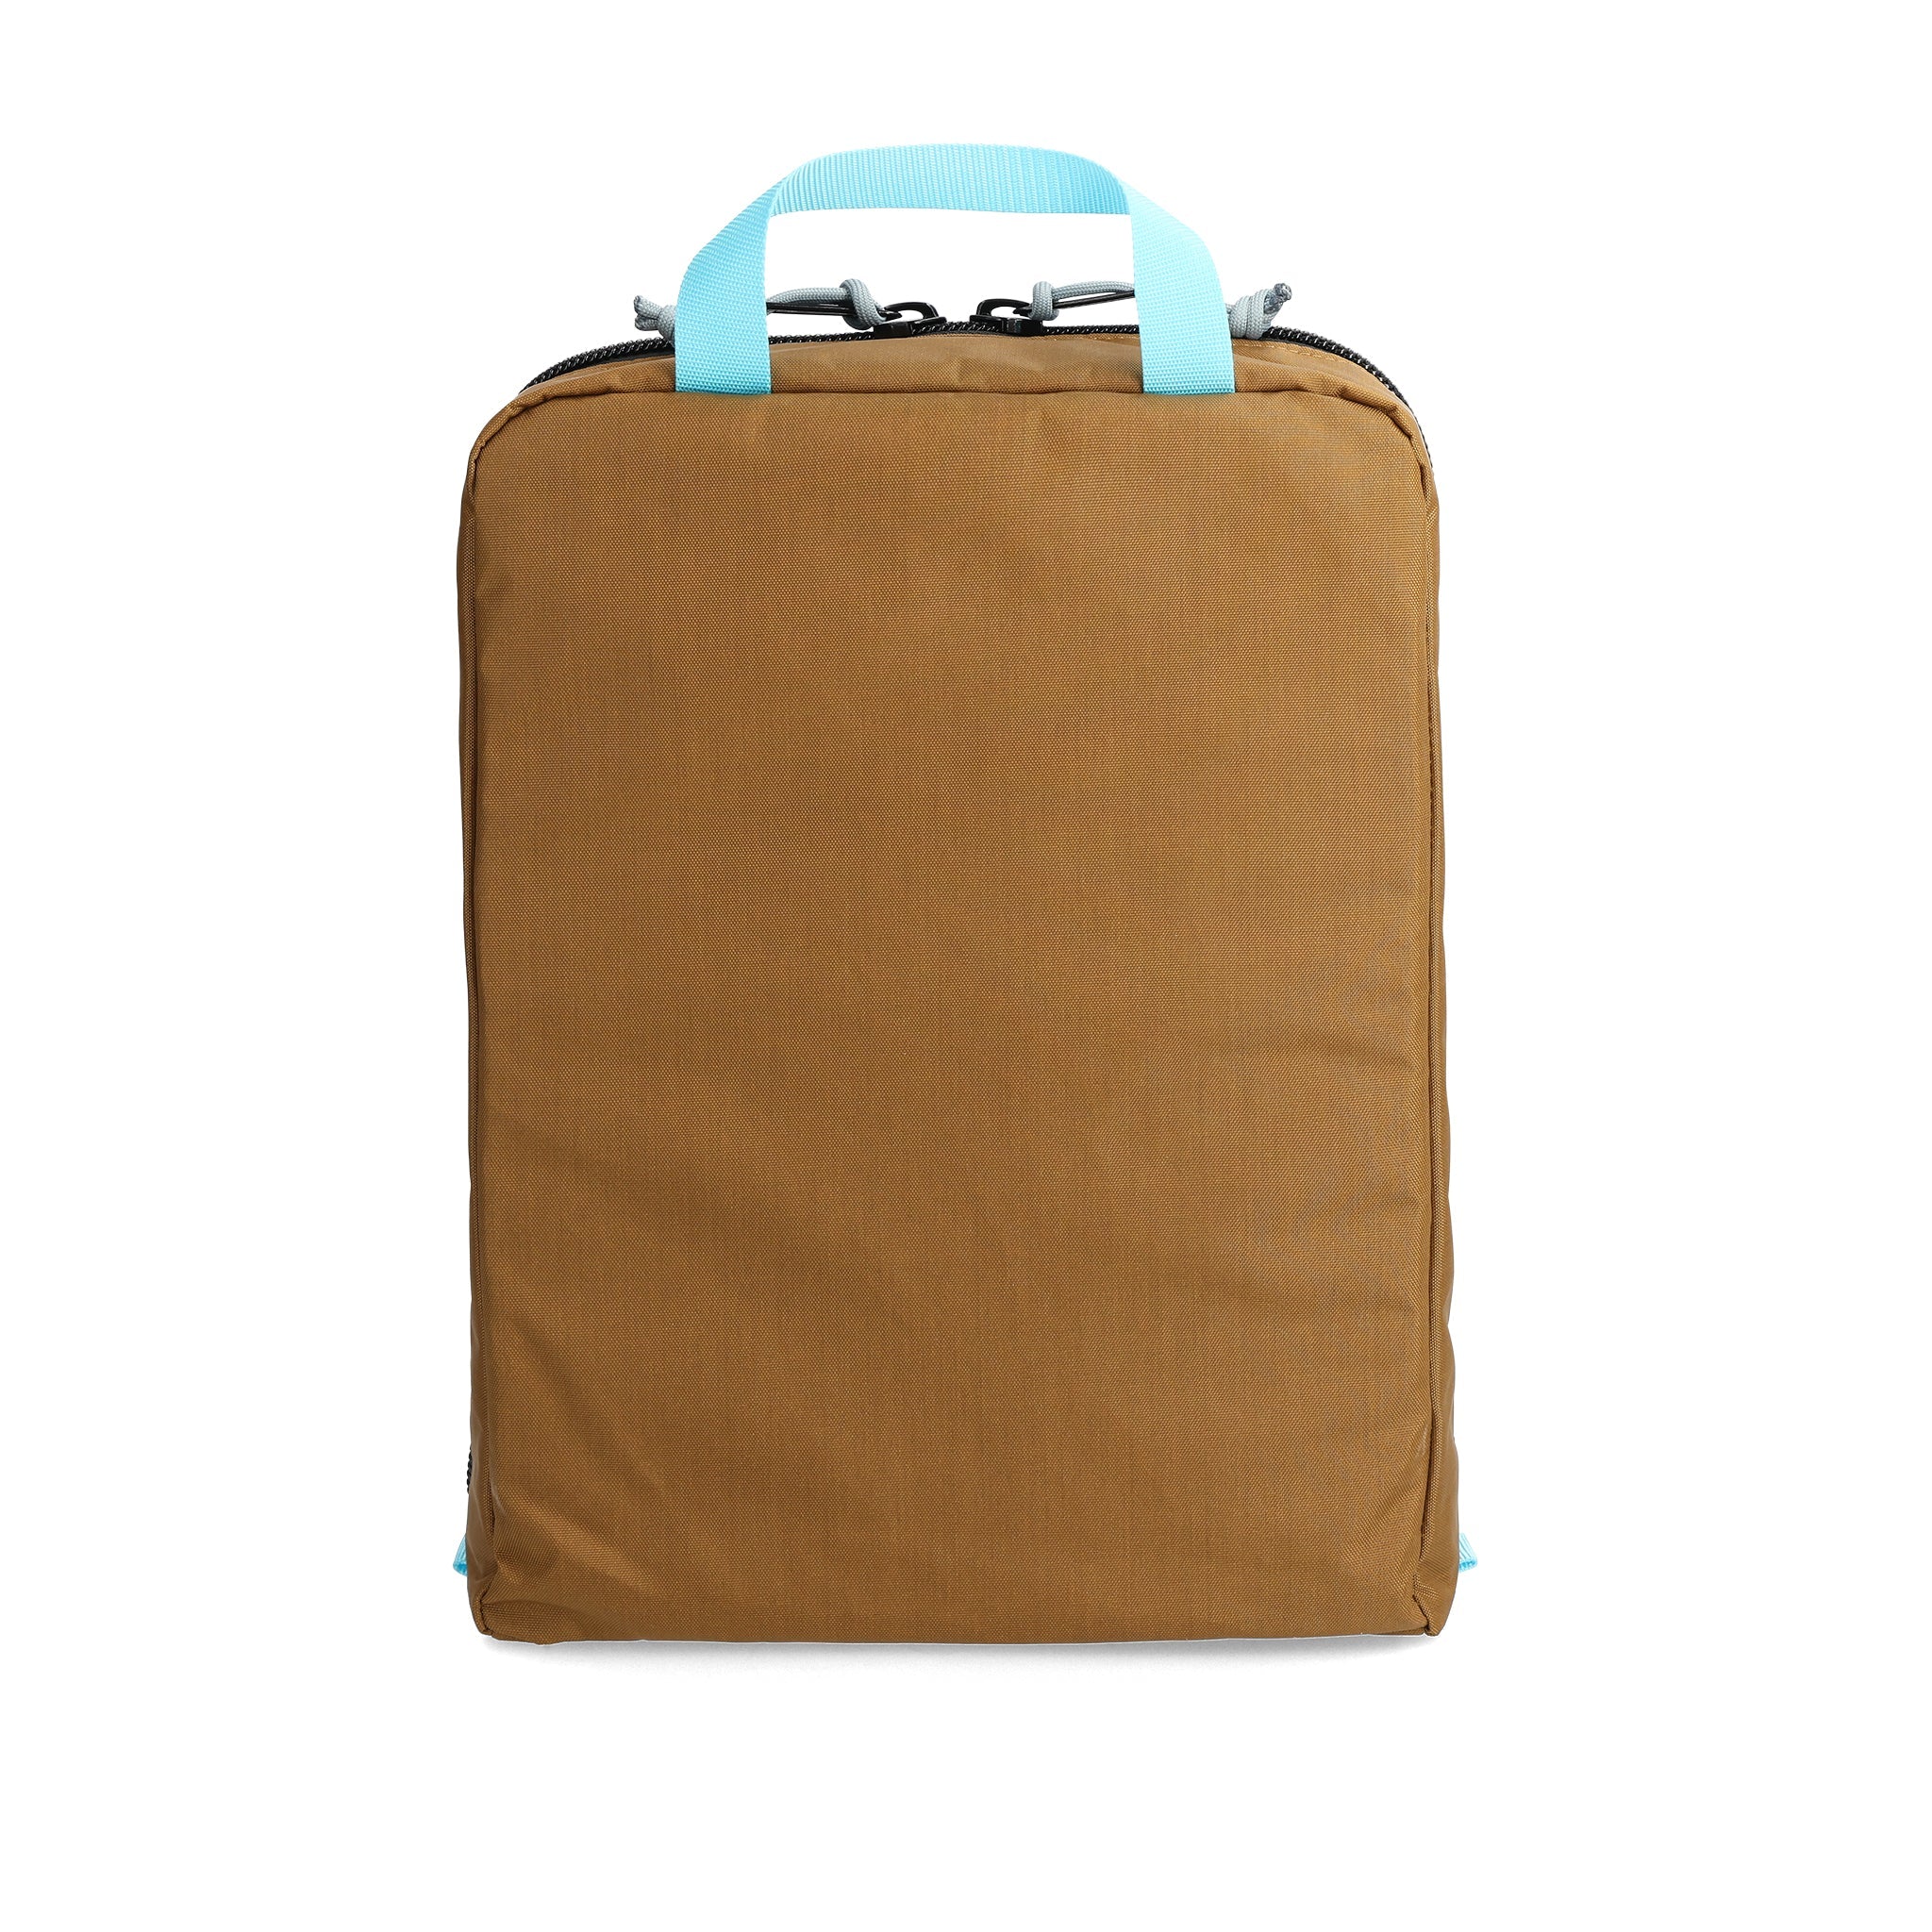 Back View of Topo Designs Pack Bag - 10L in "Dark Khaki"